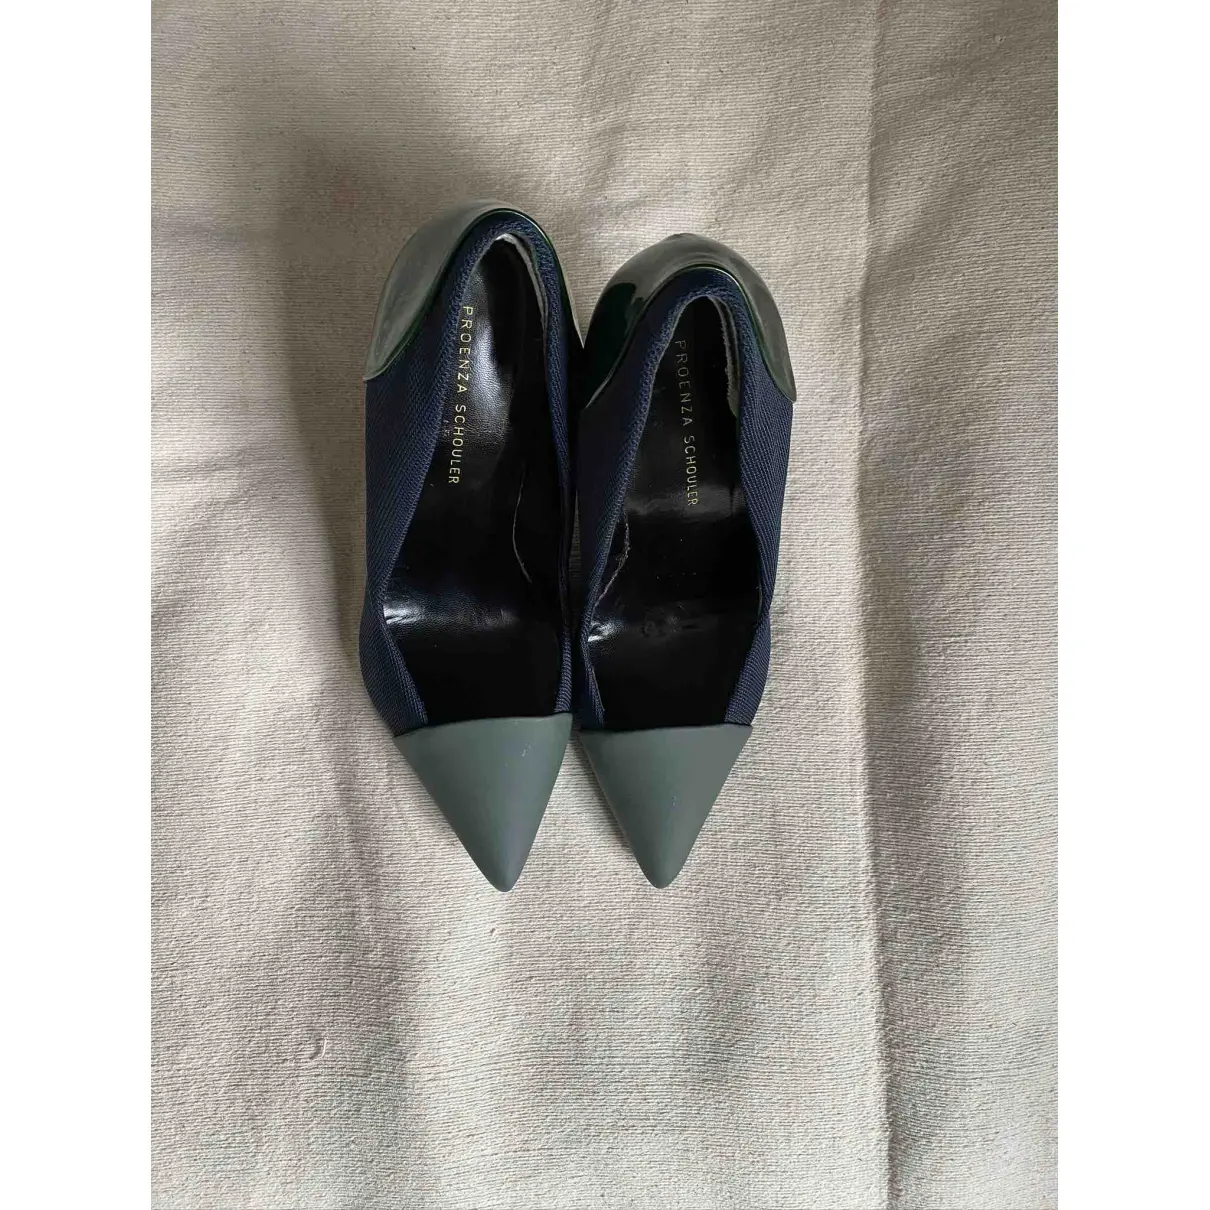 Buy Proenza Schouler Leather heels online